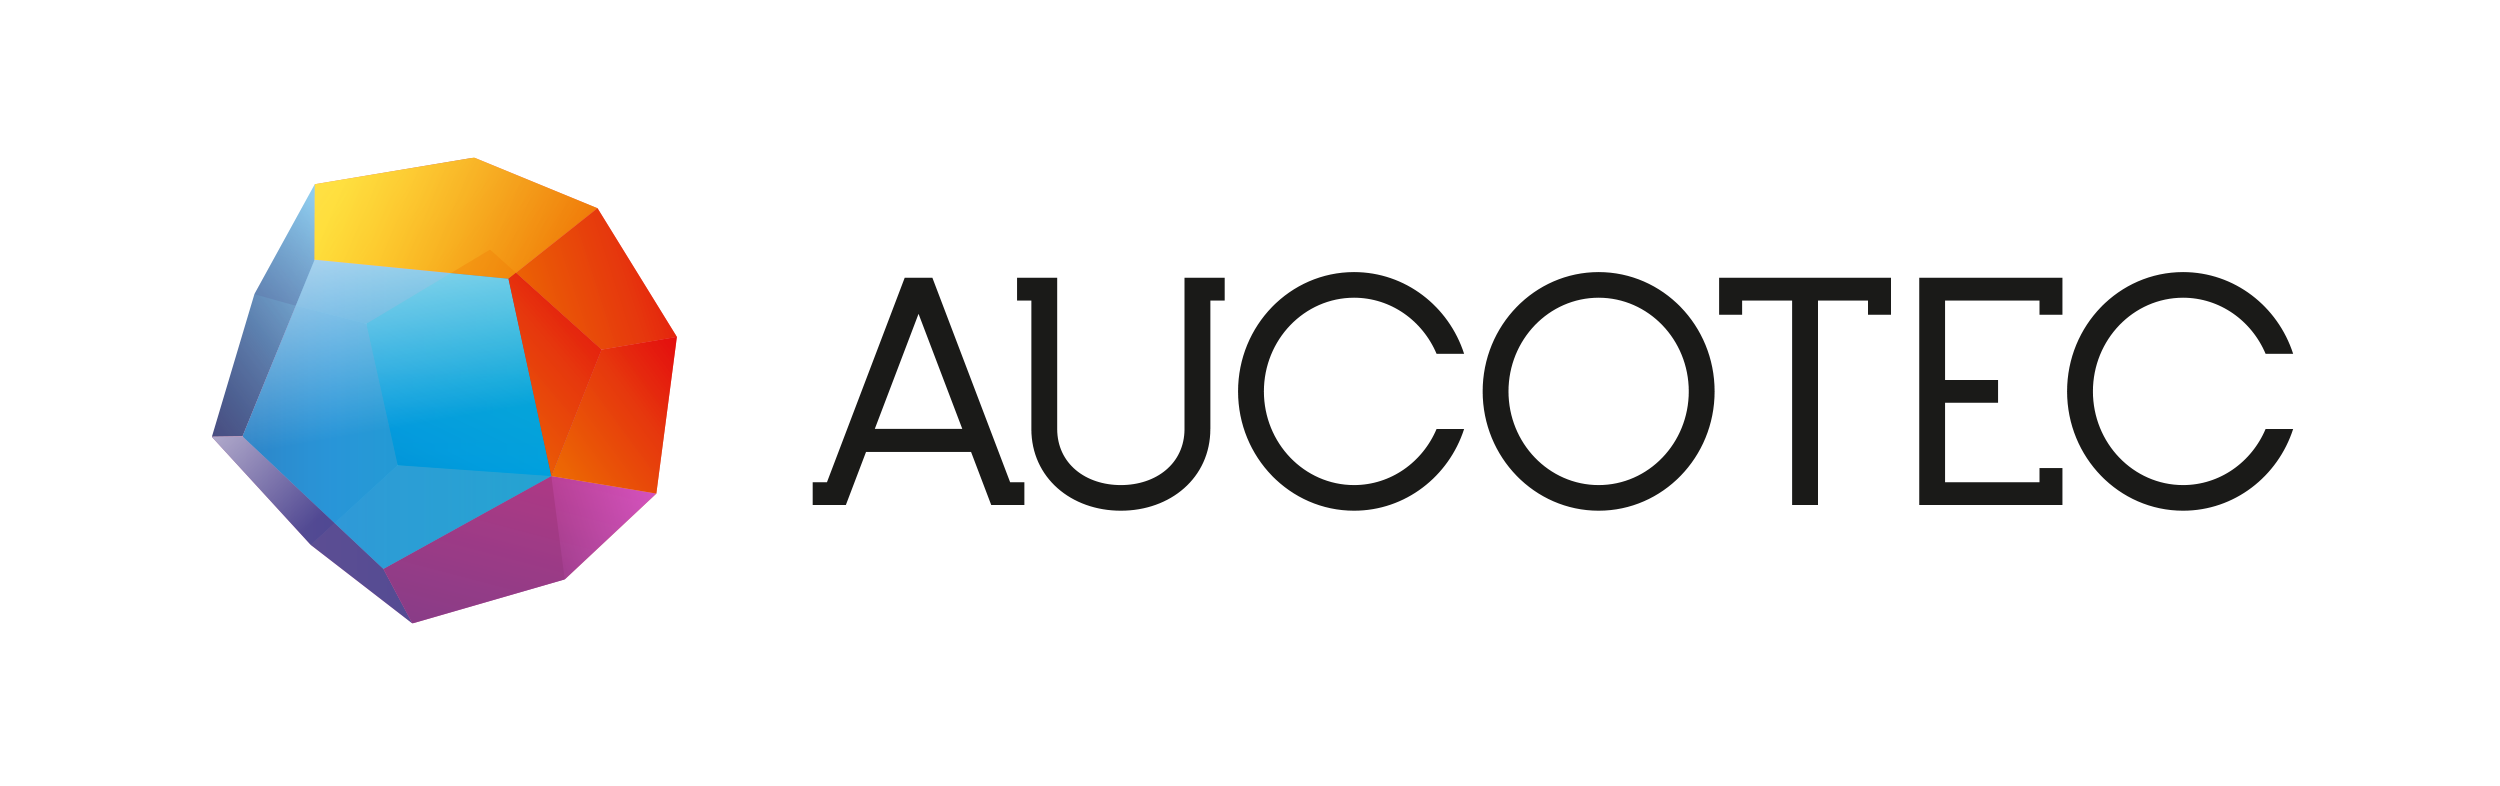 AUCOTEC 徽标